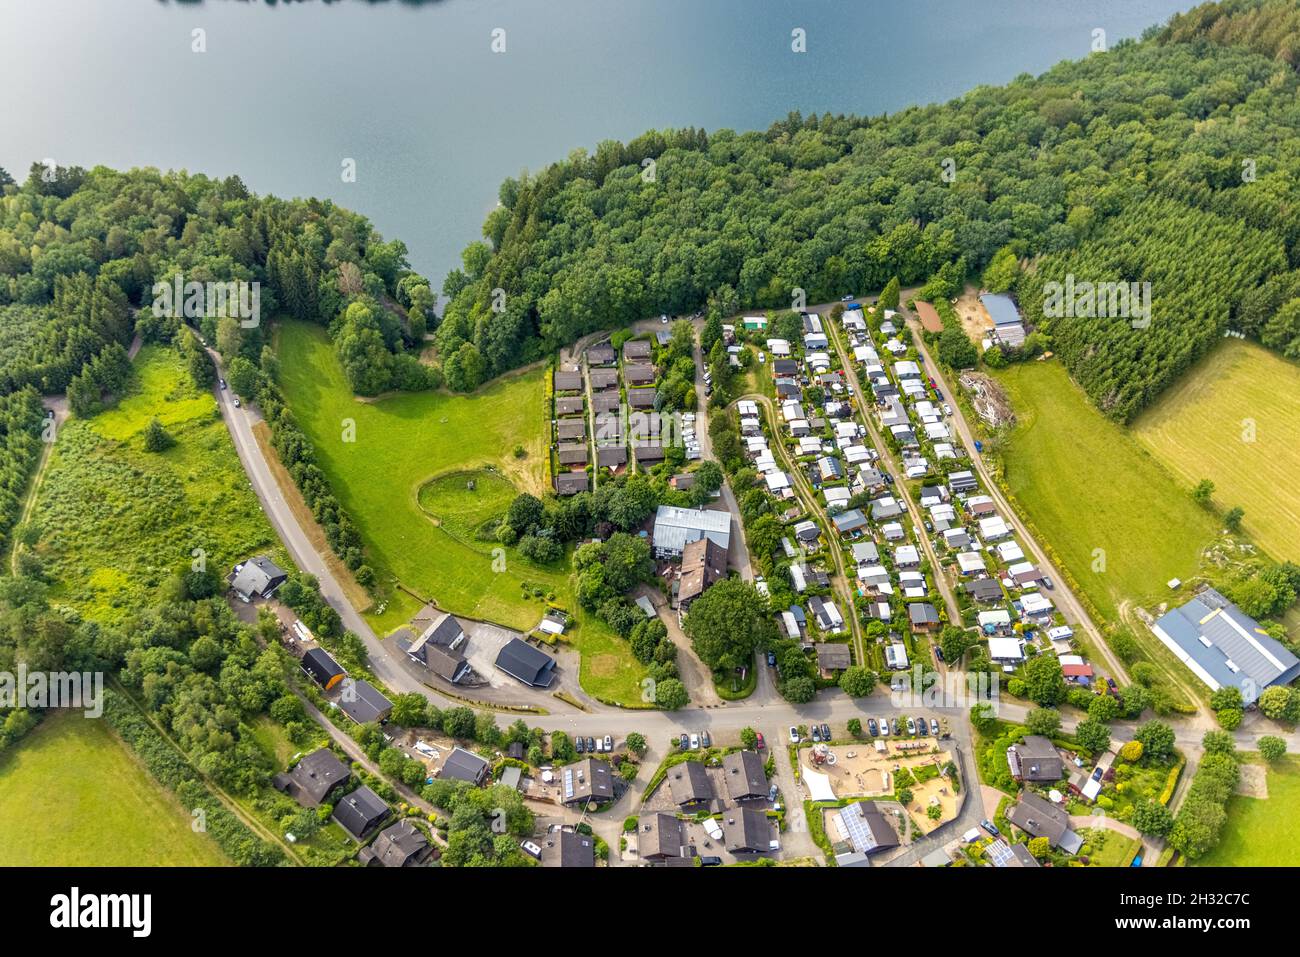 Luftbild, Listertalsperre, Campingplatz Wörmge, Strahlemännchen.de - Reha-Resort für Familien, Rabaukenland, Eichen, Attendorn, Sauerland, Nordrhein-W Stock Photo